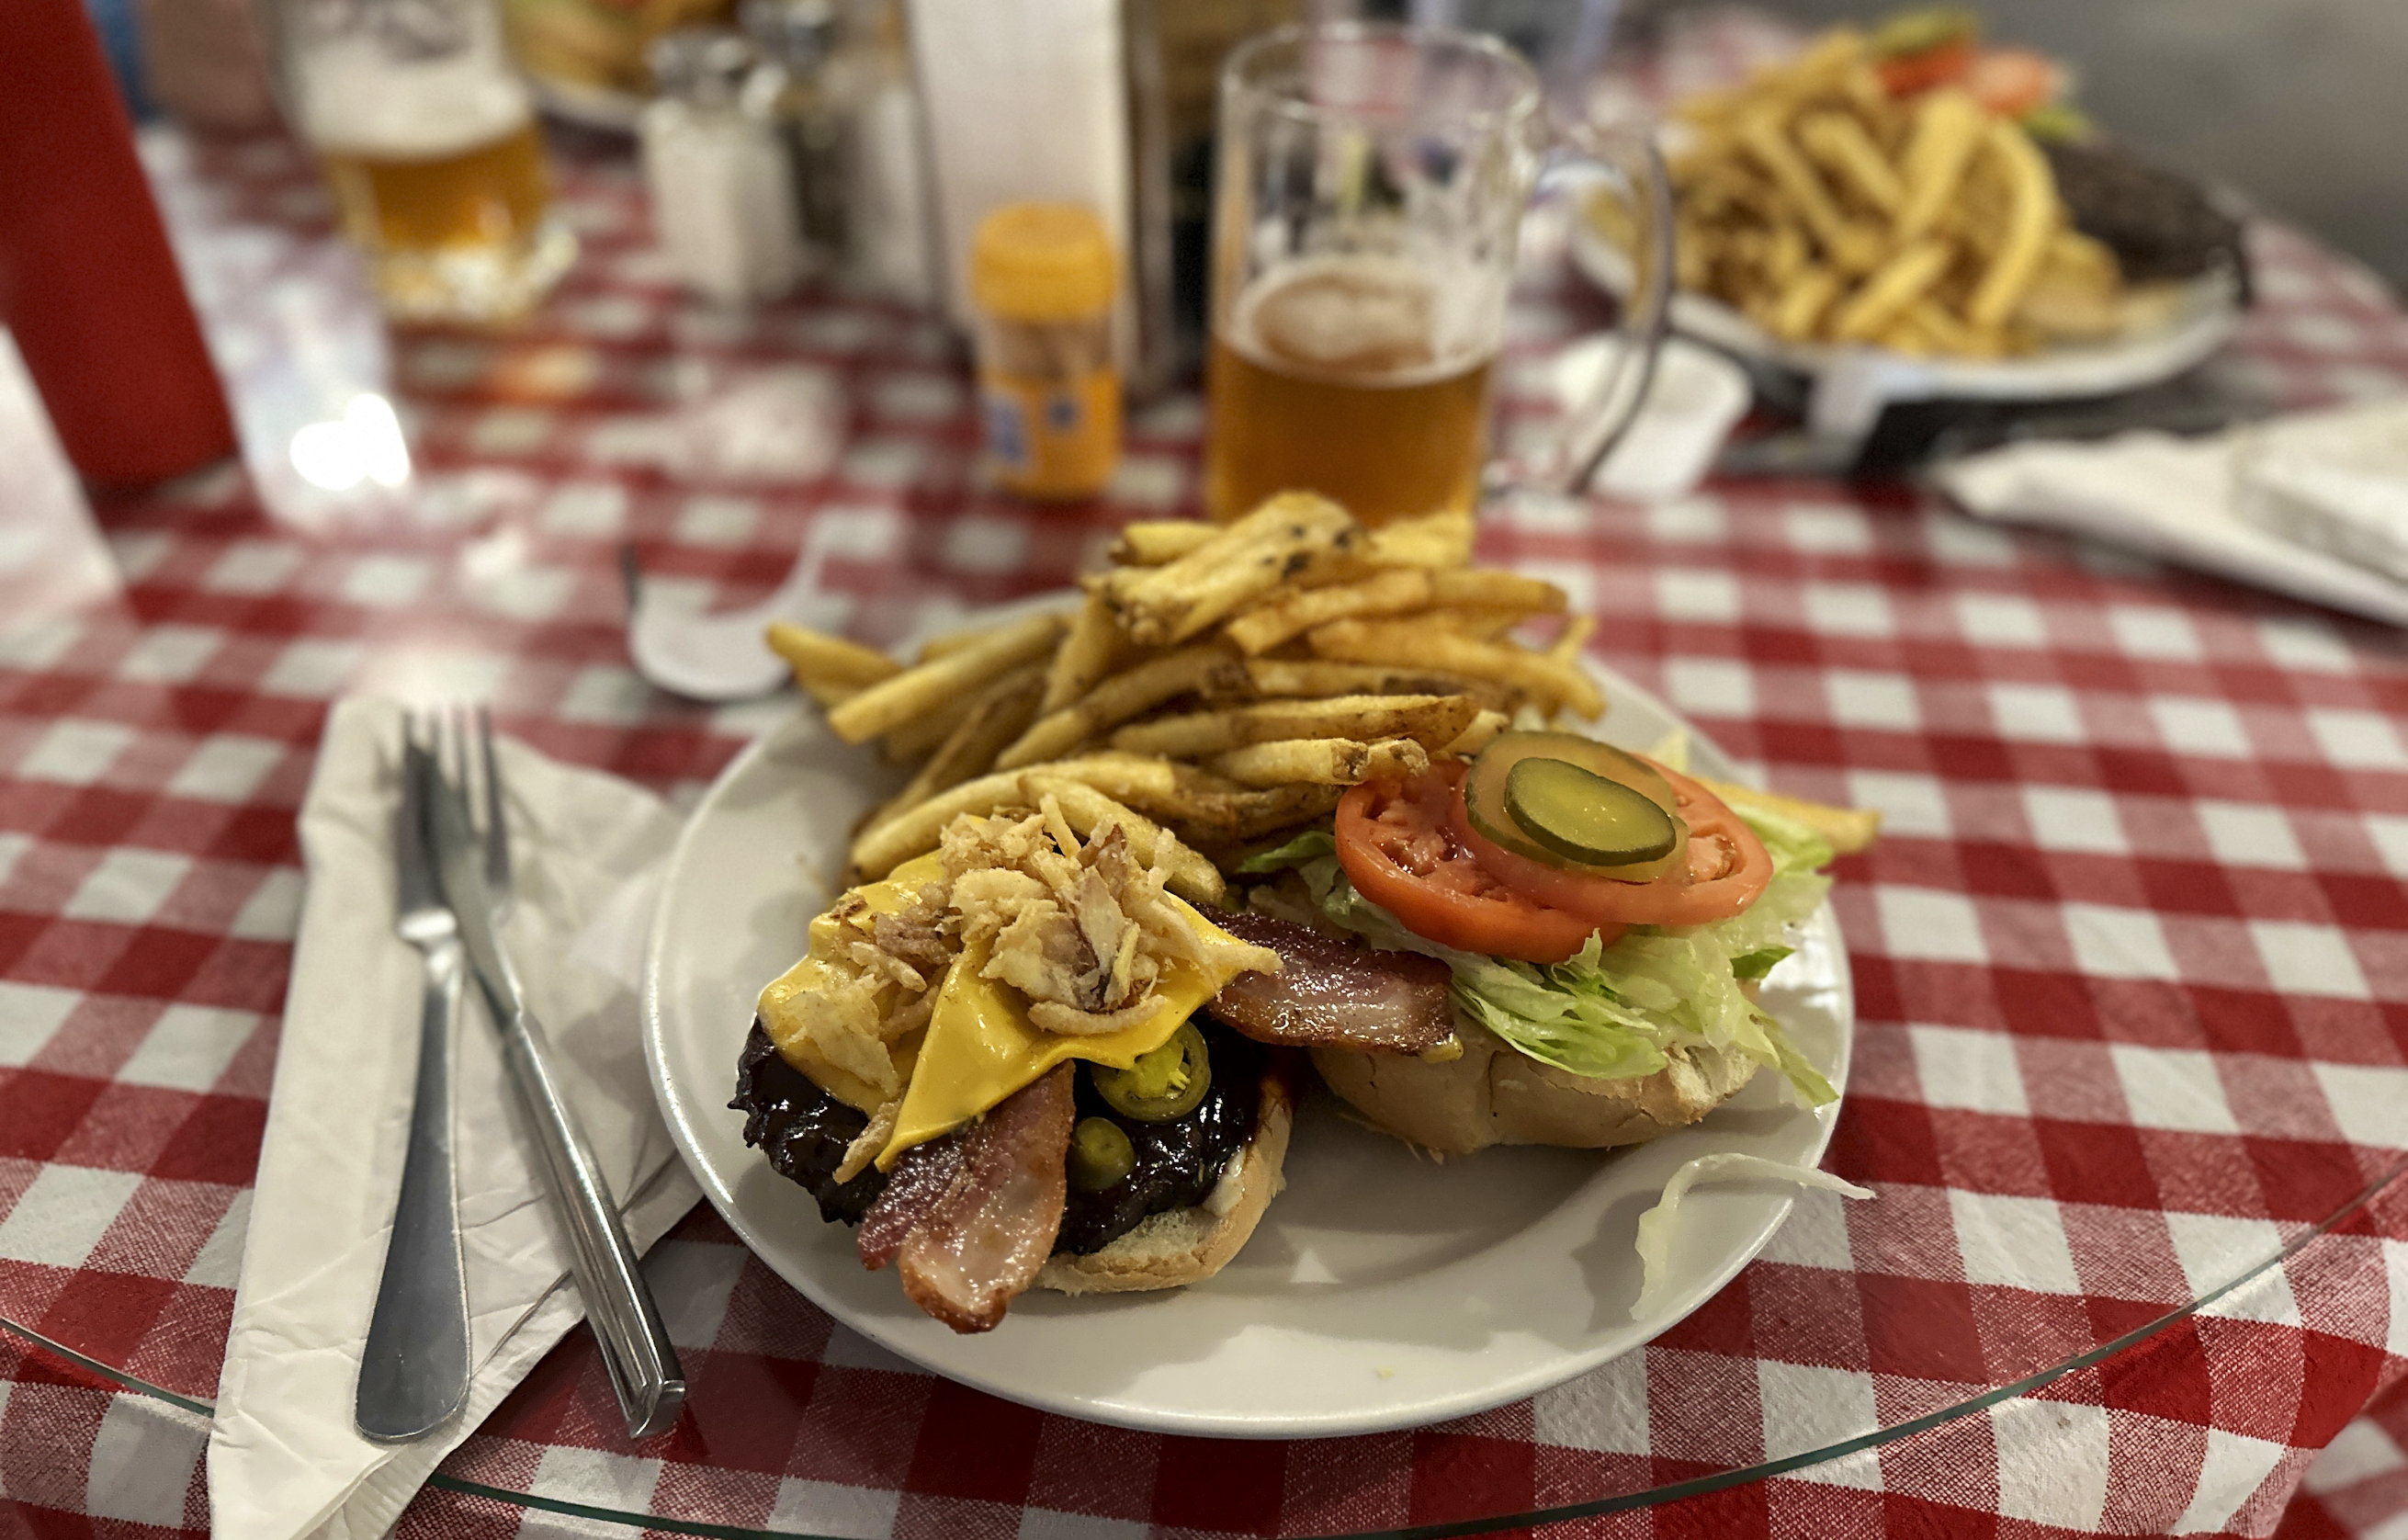 Ein Teller mit einem grossen Burger und Pommes steht auf dem rot/weiss karierten Tischtuch